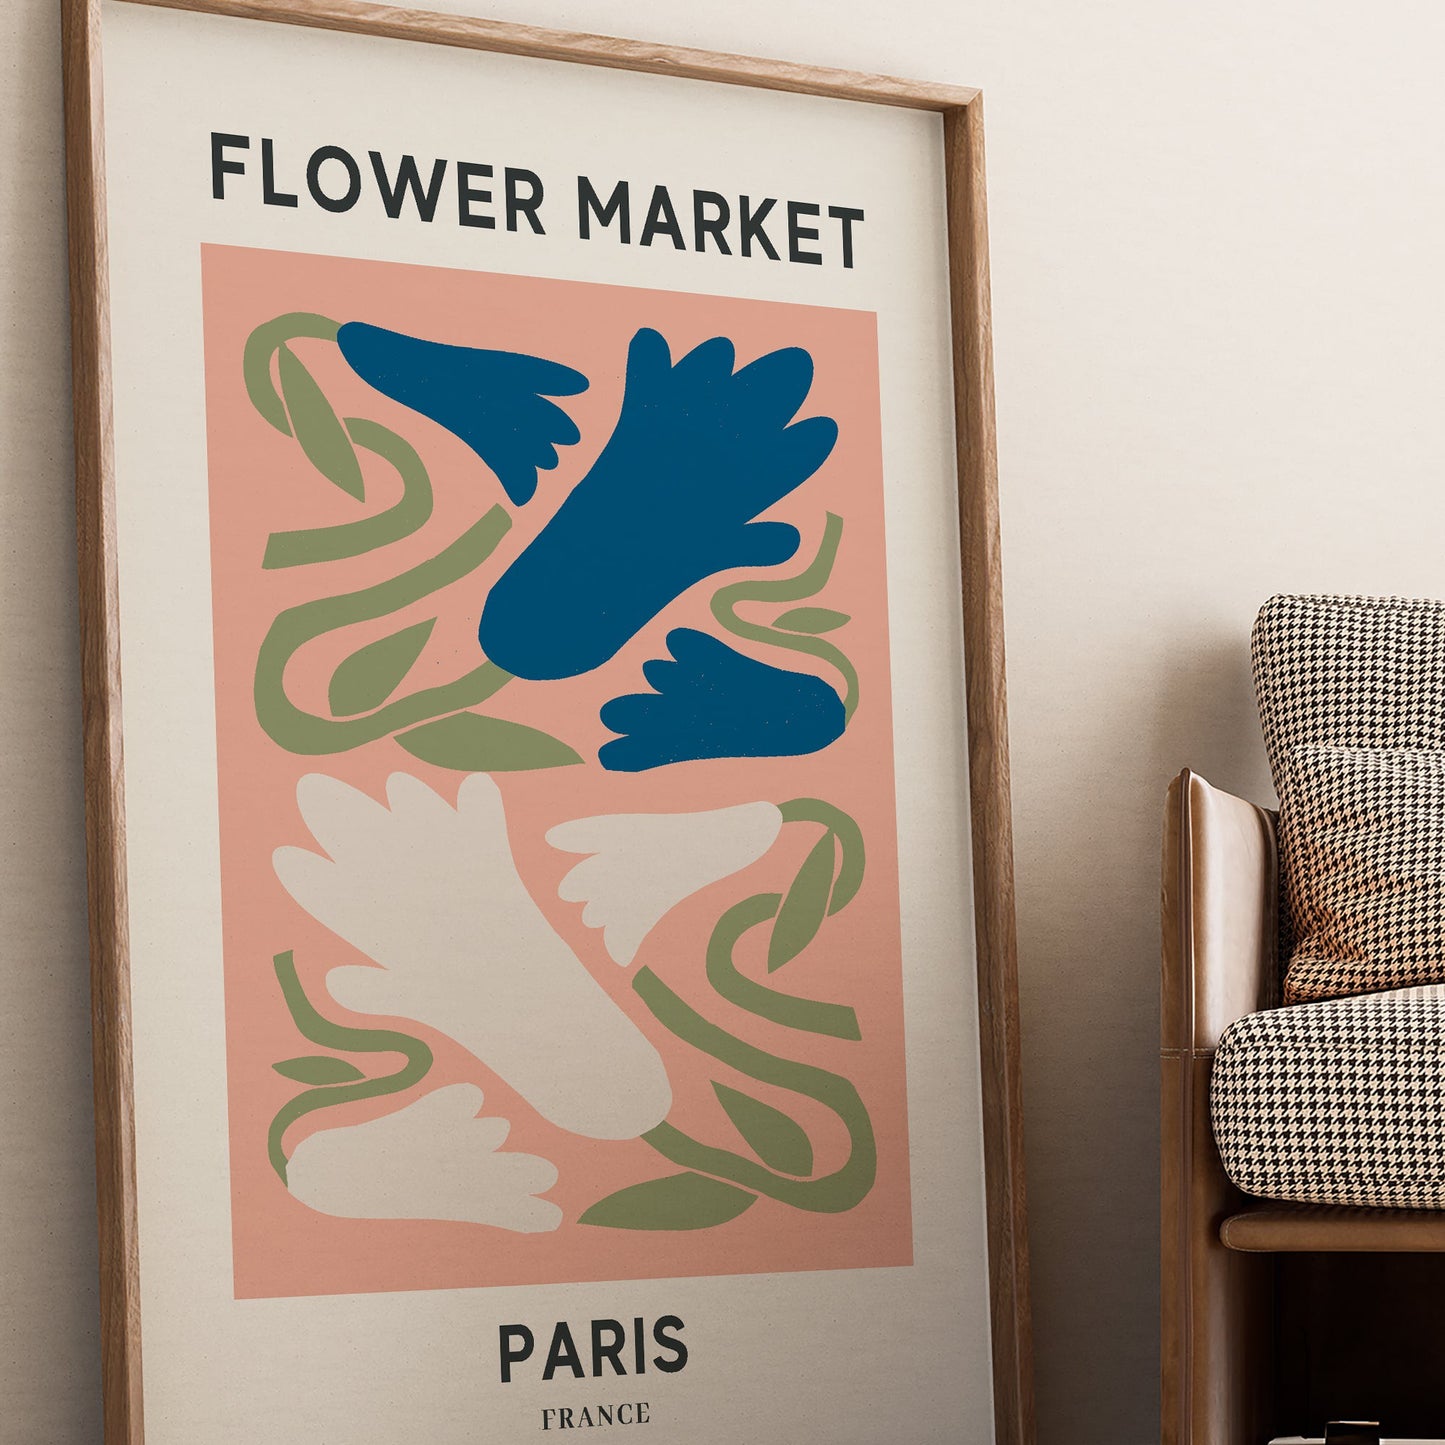 Flower Market Paris Print #2